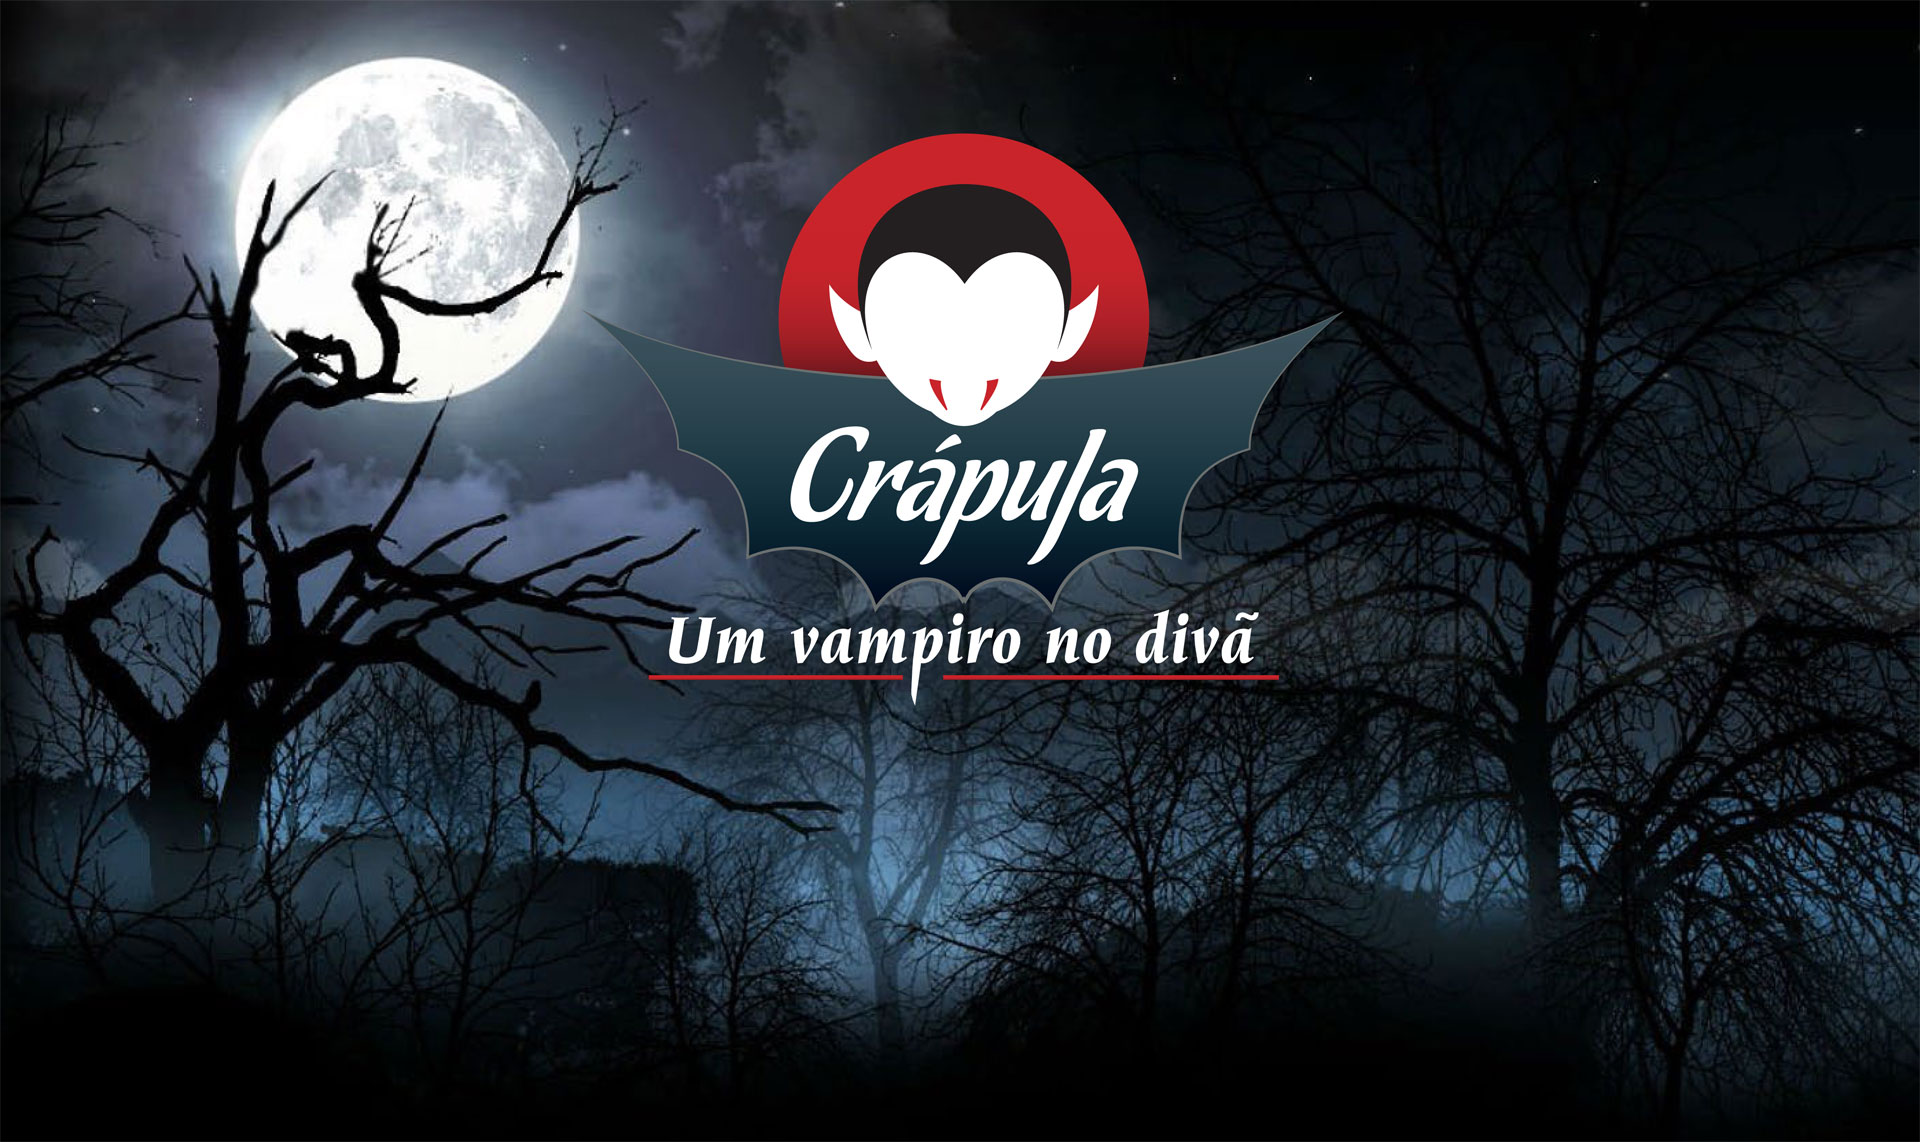 Crápula – Um vampiro no divã